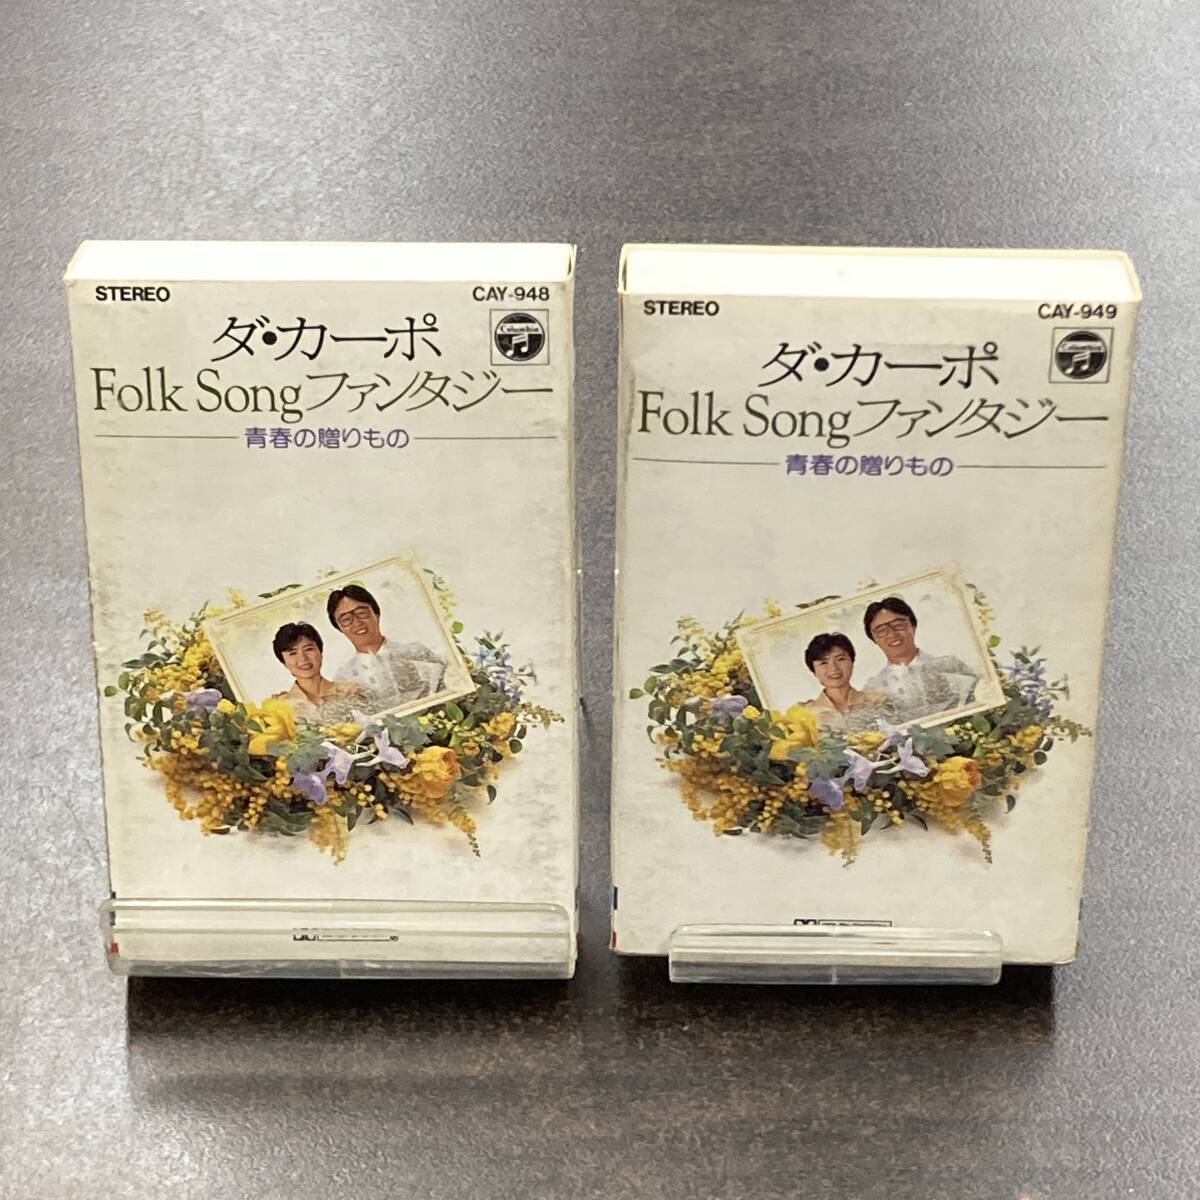 1062M ダ・カーポ Folk Song ファンタジー カセットテープ / DA CAPO Citypop Cassette Tapeの画像1